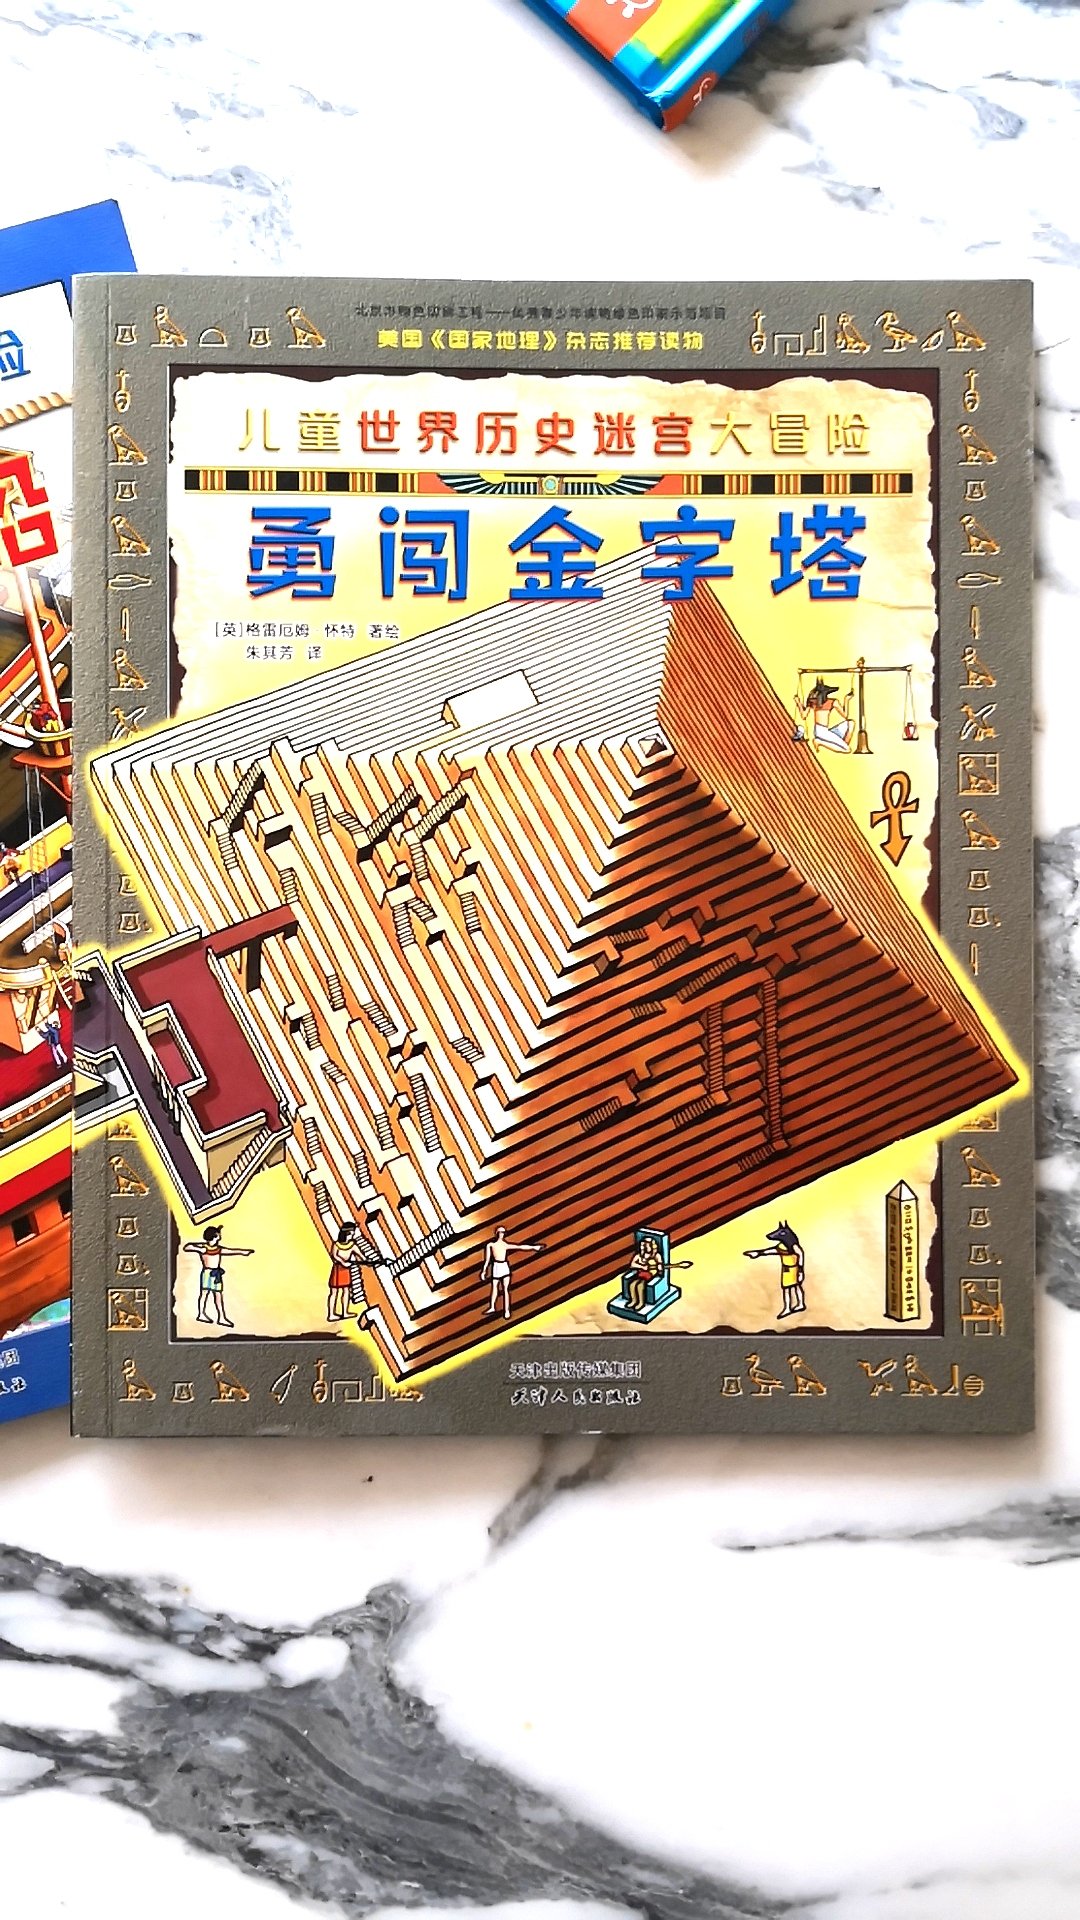 这本是迷宫大冒险系列之勇闯金字塔，介绍了金字塔的建造过程和内部结构，这套书很好